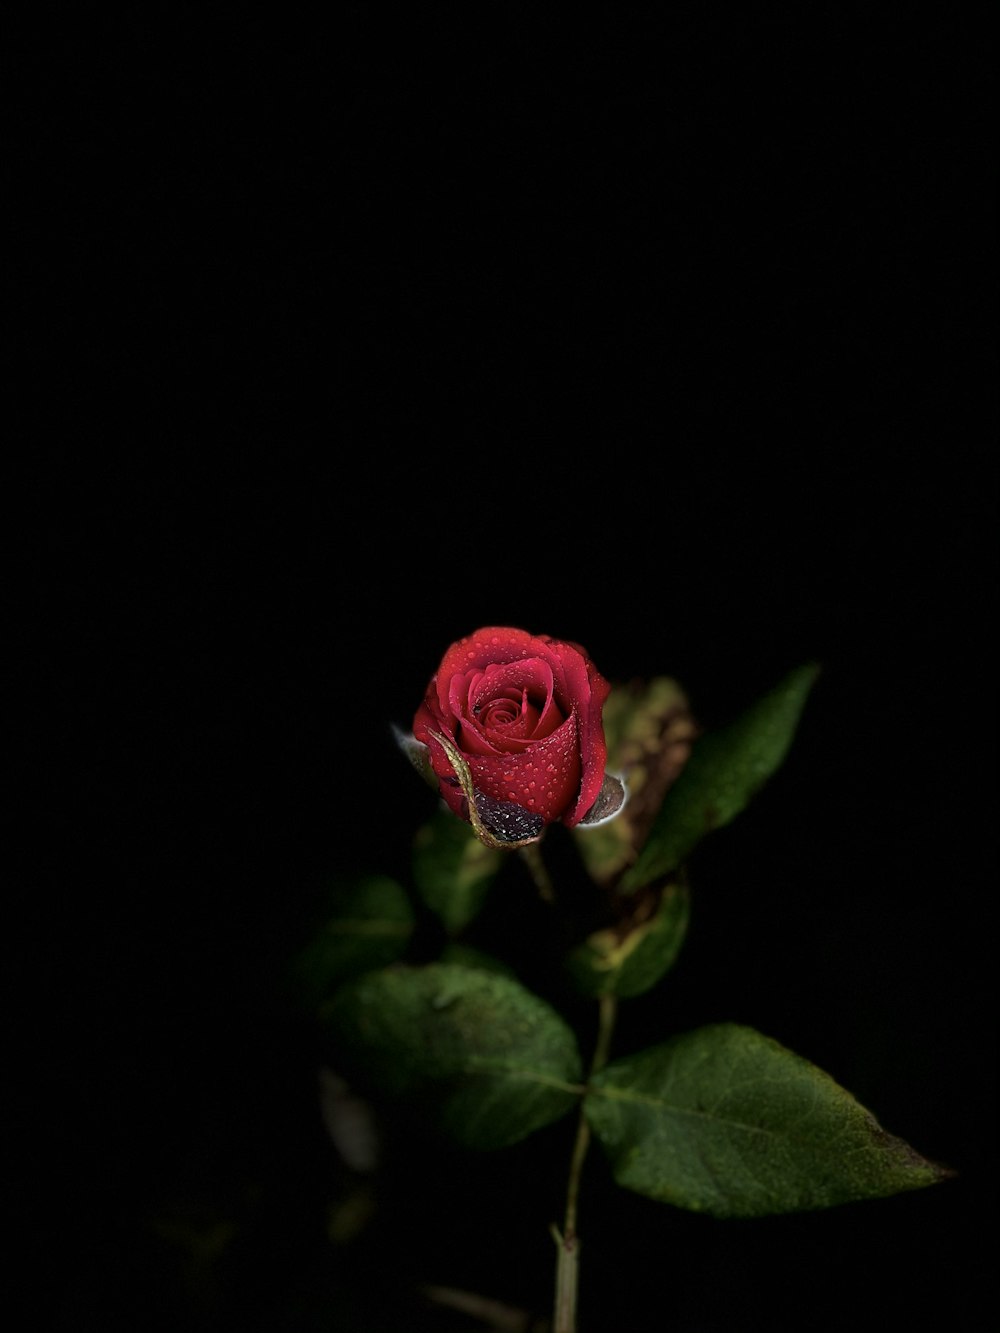 red rose in dark room